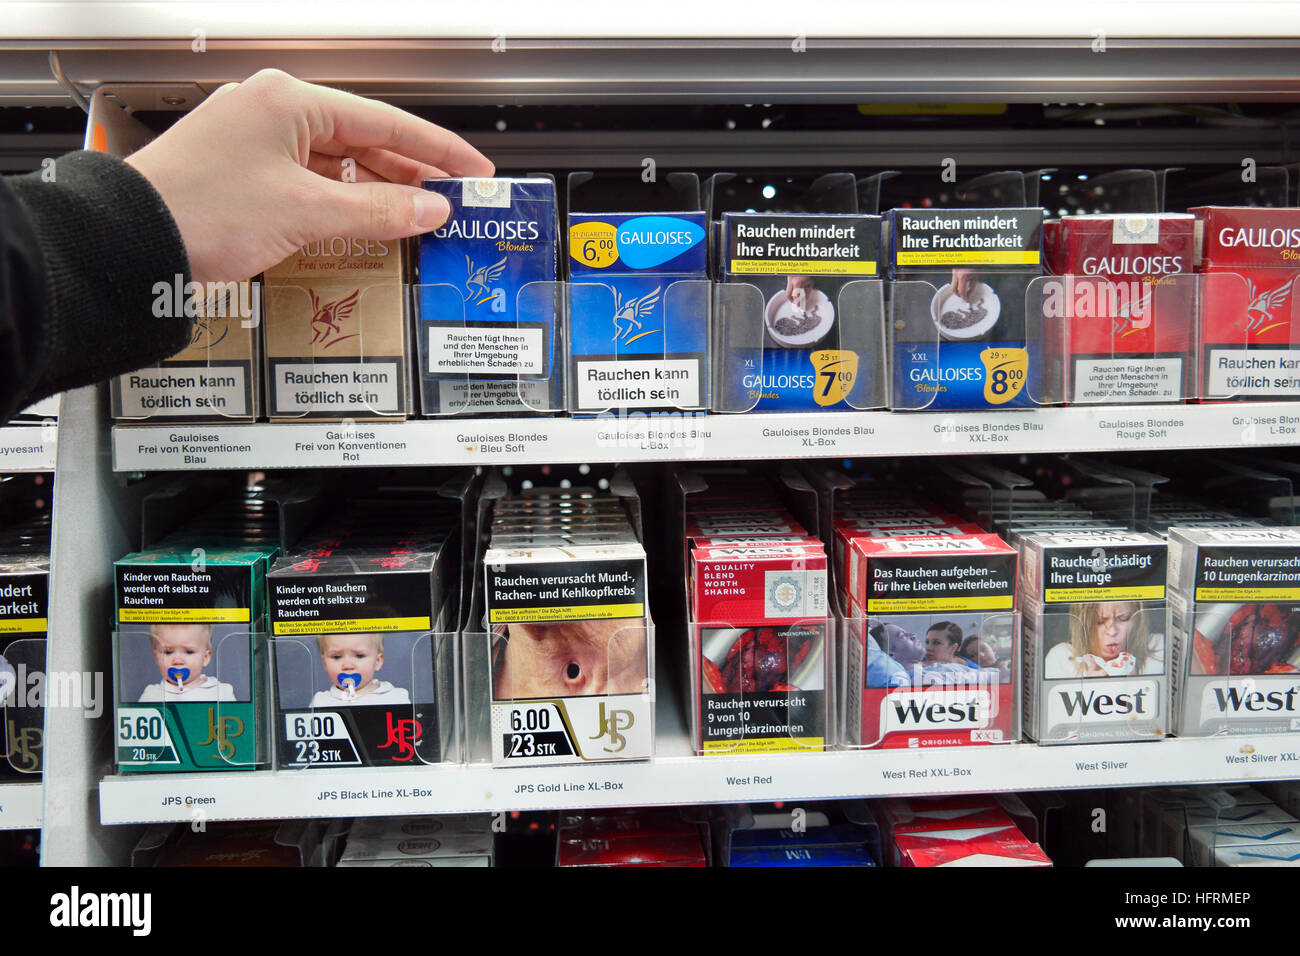 Des cigarettes dans un supermarché avec photos sur les paquets de cigarettes pour illustrer les dangers du tabagisme Banque D'Images